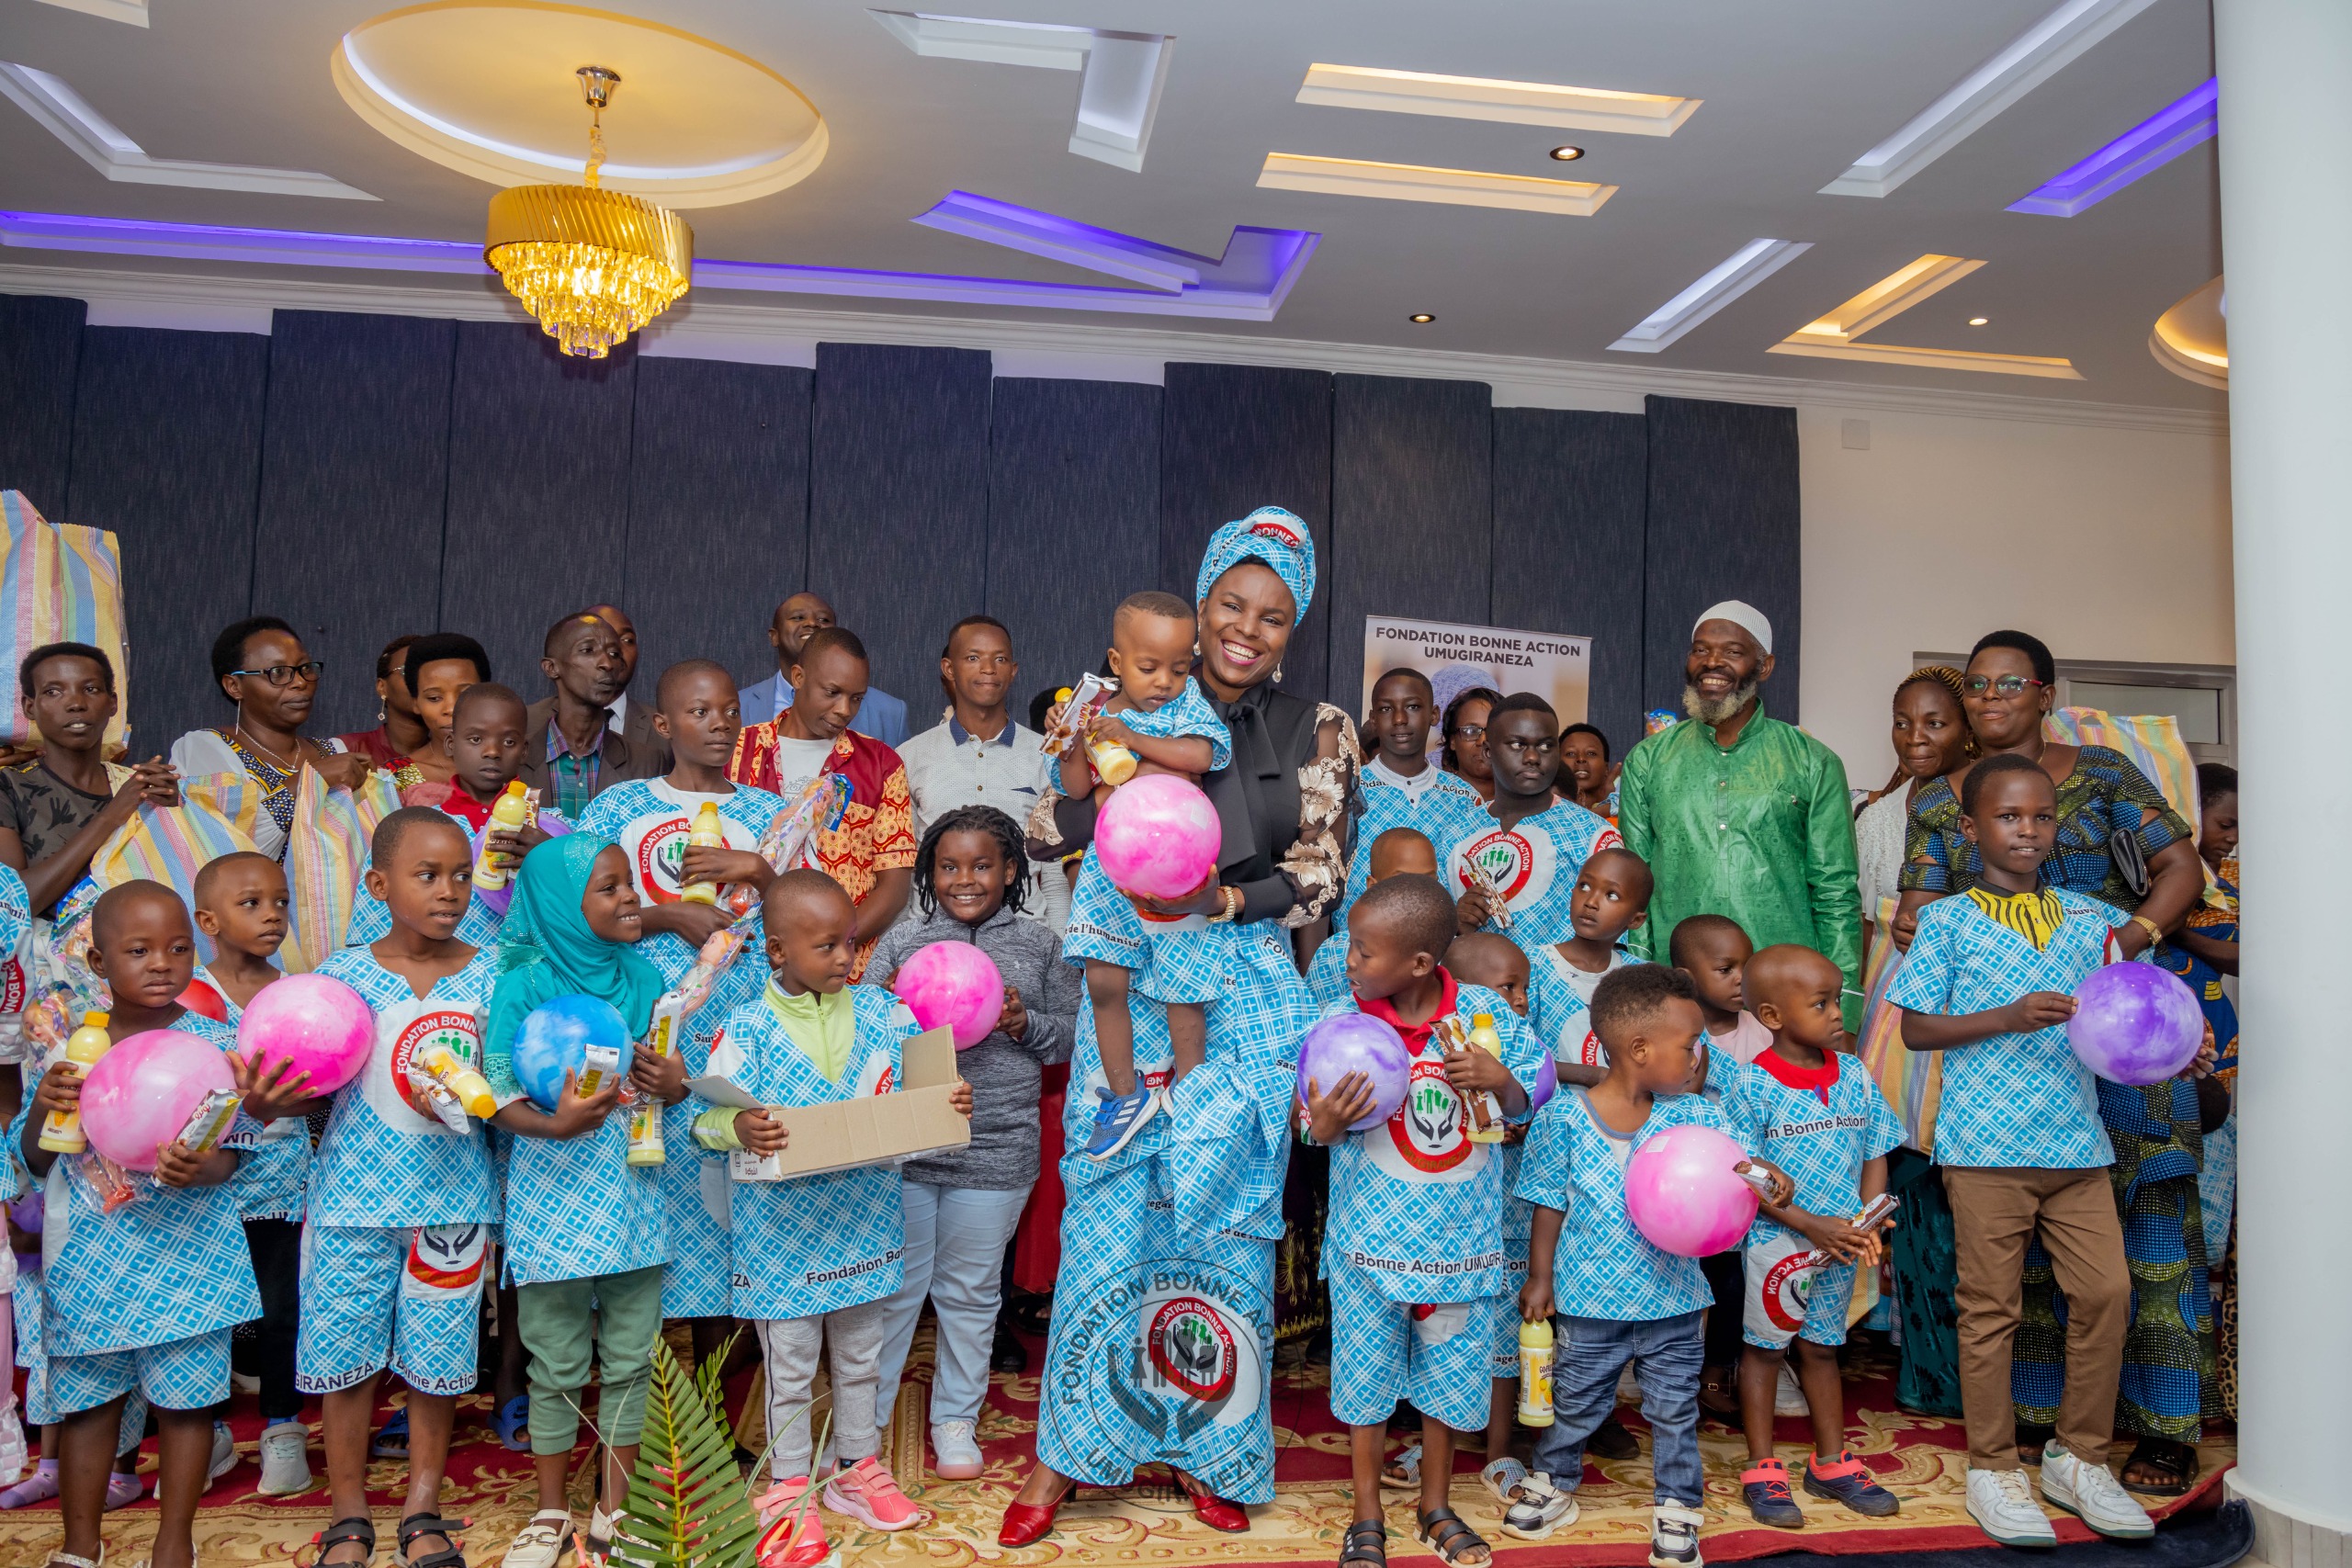 La Fondation Bonne Action Umugiraneza célèbre la guérison des enfants grâce à des soins chirurgicaux à l’étranger